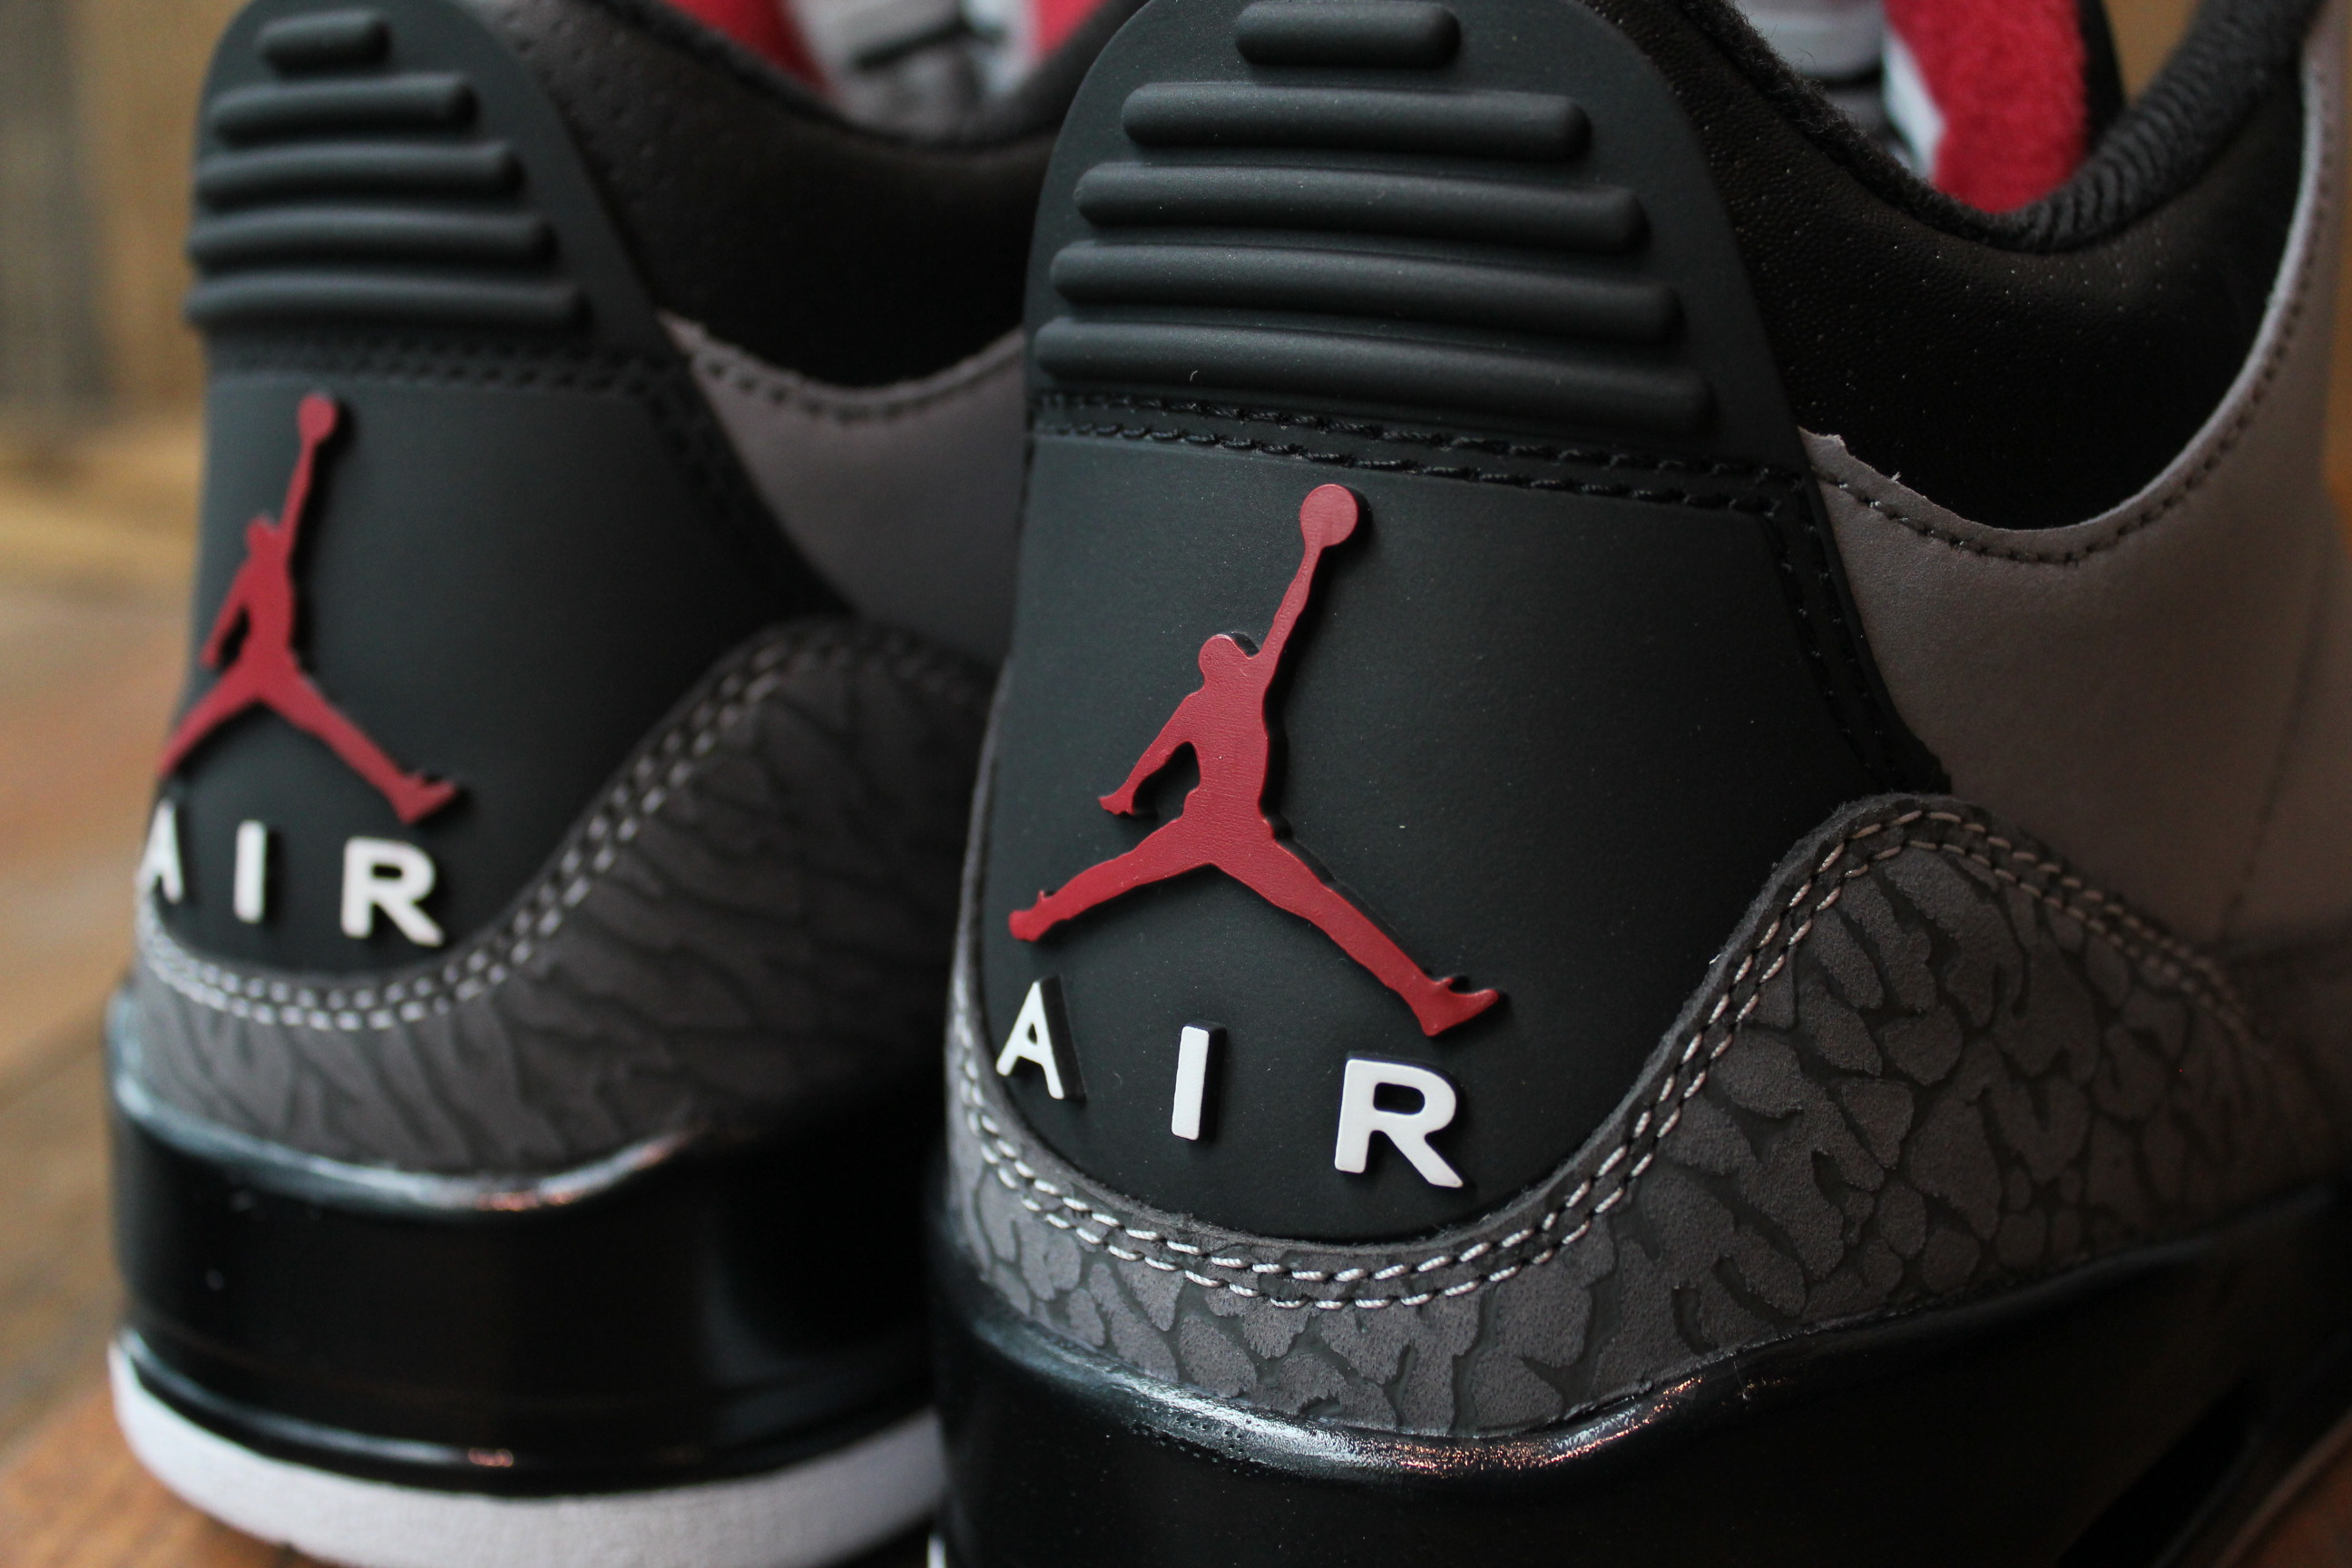 Download Free Air Jordan Shoes Wallpapers